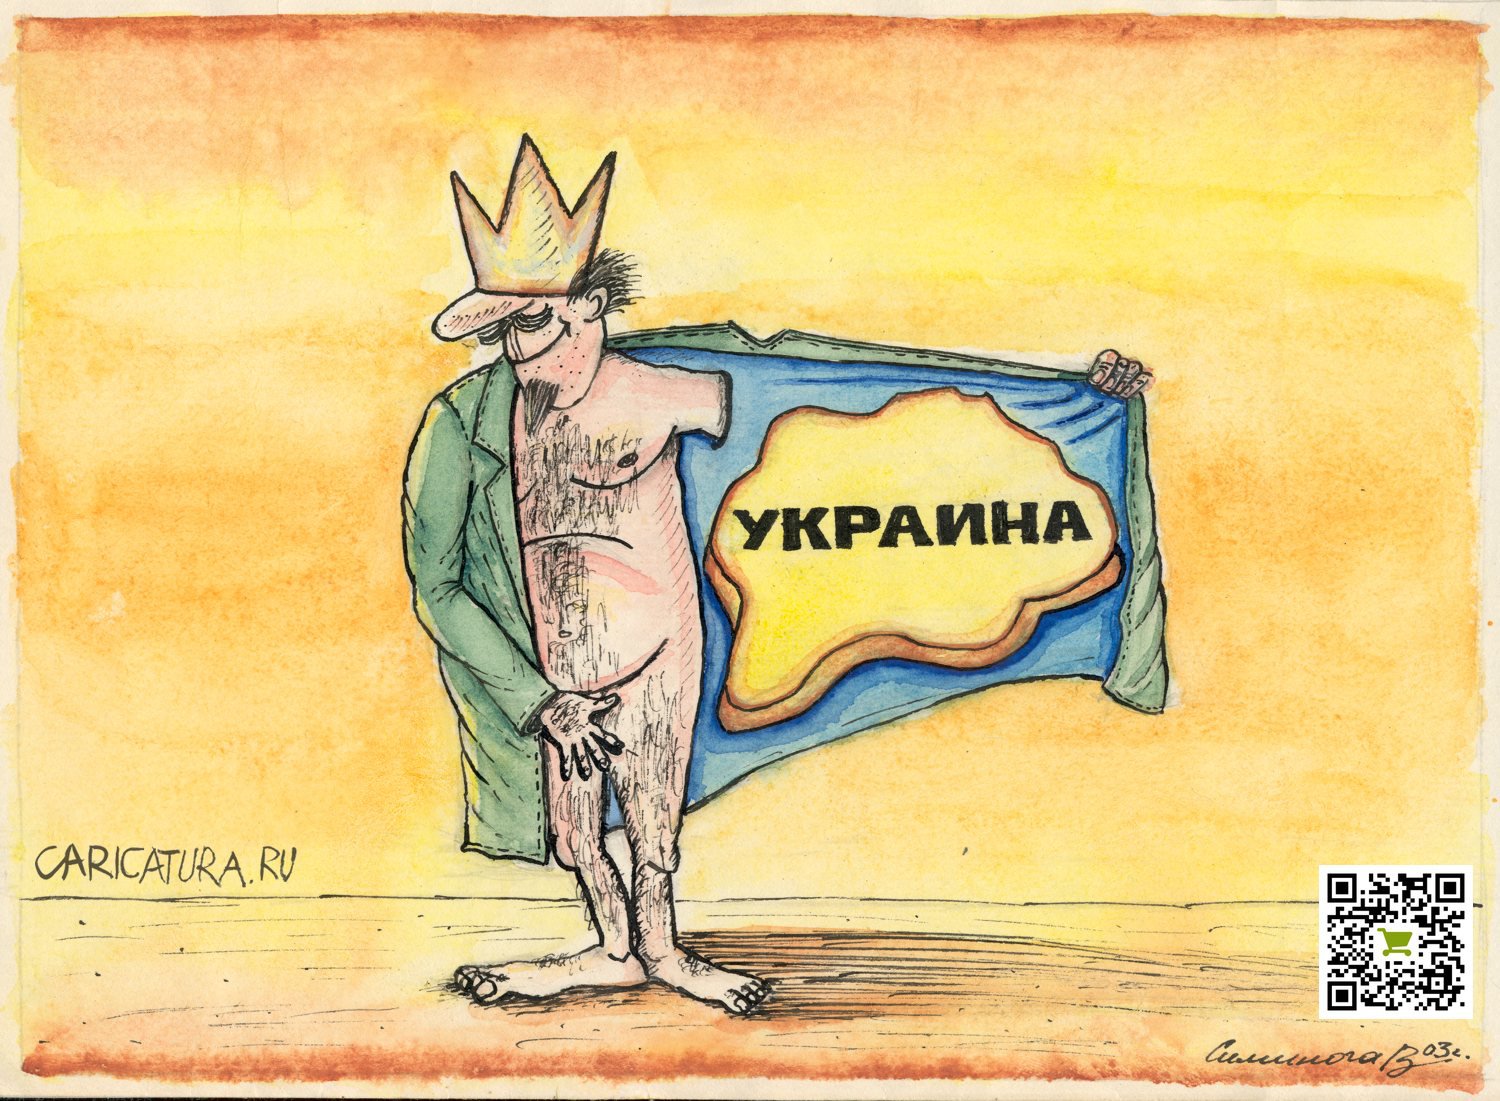 Карикатура "Продано", Vadim Siminoga